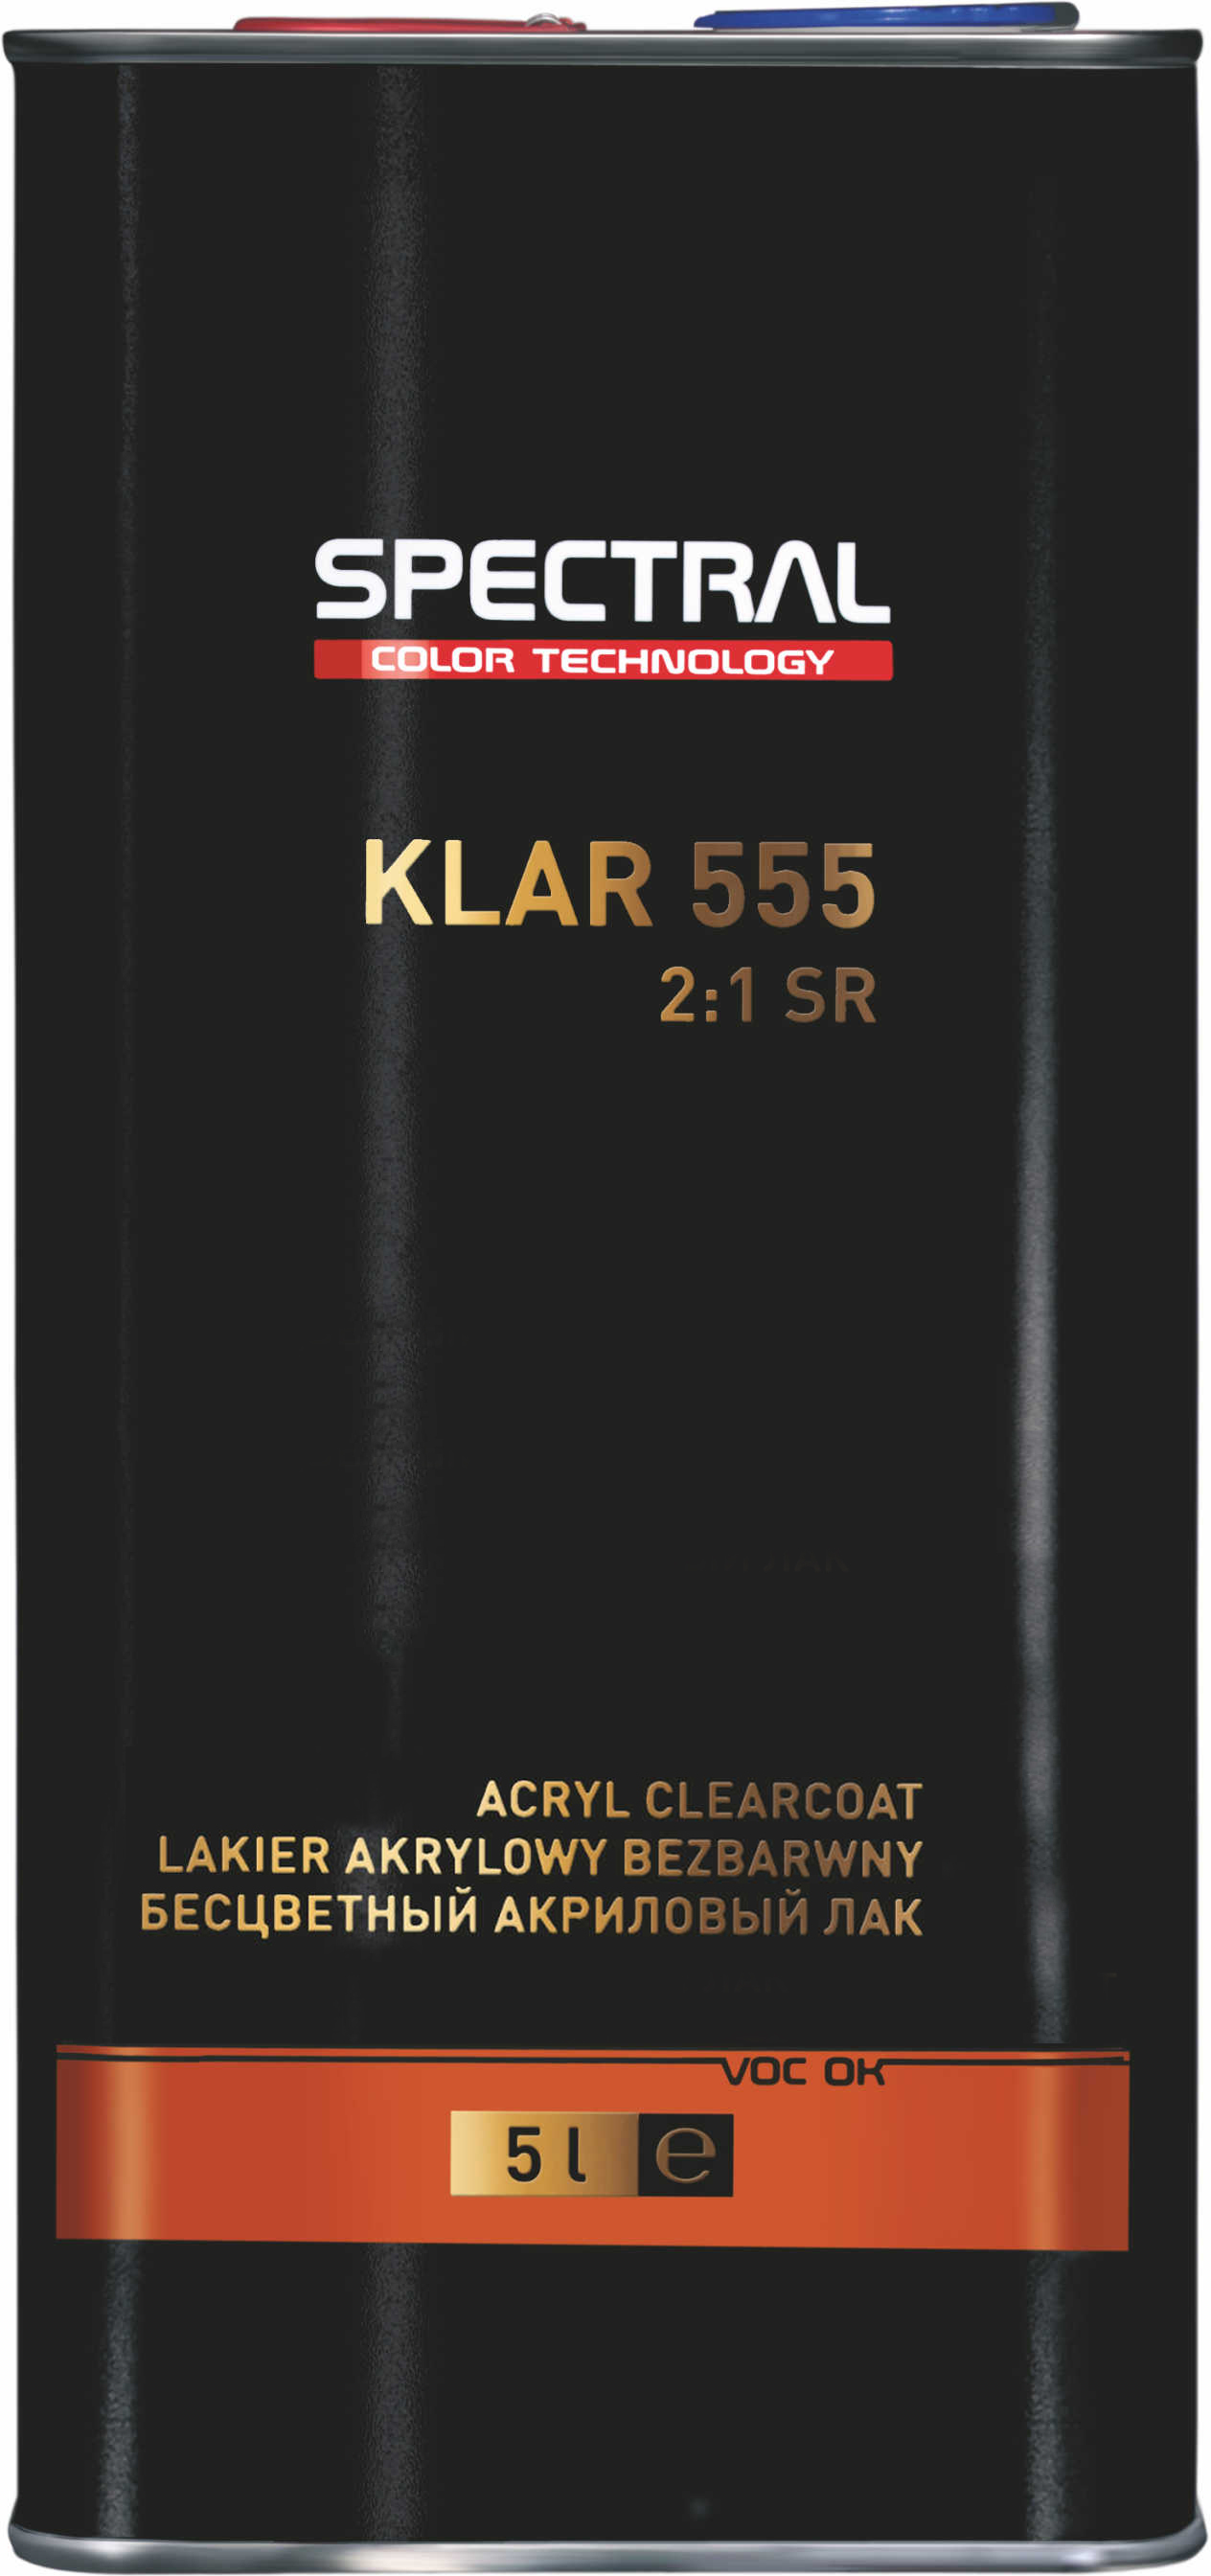 KLAR 555 - Двухкомпонентный бесцветный акриловый лак с повышенной устойчивостью к царапинам Scratch Resistant (SR)